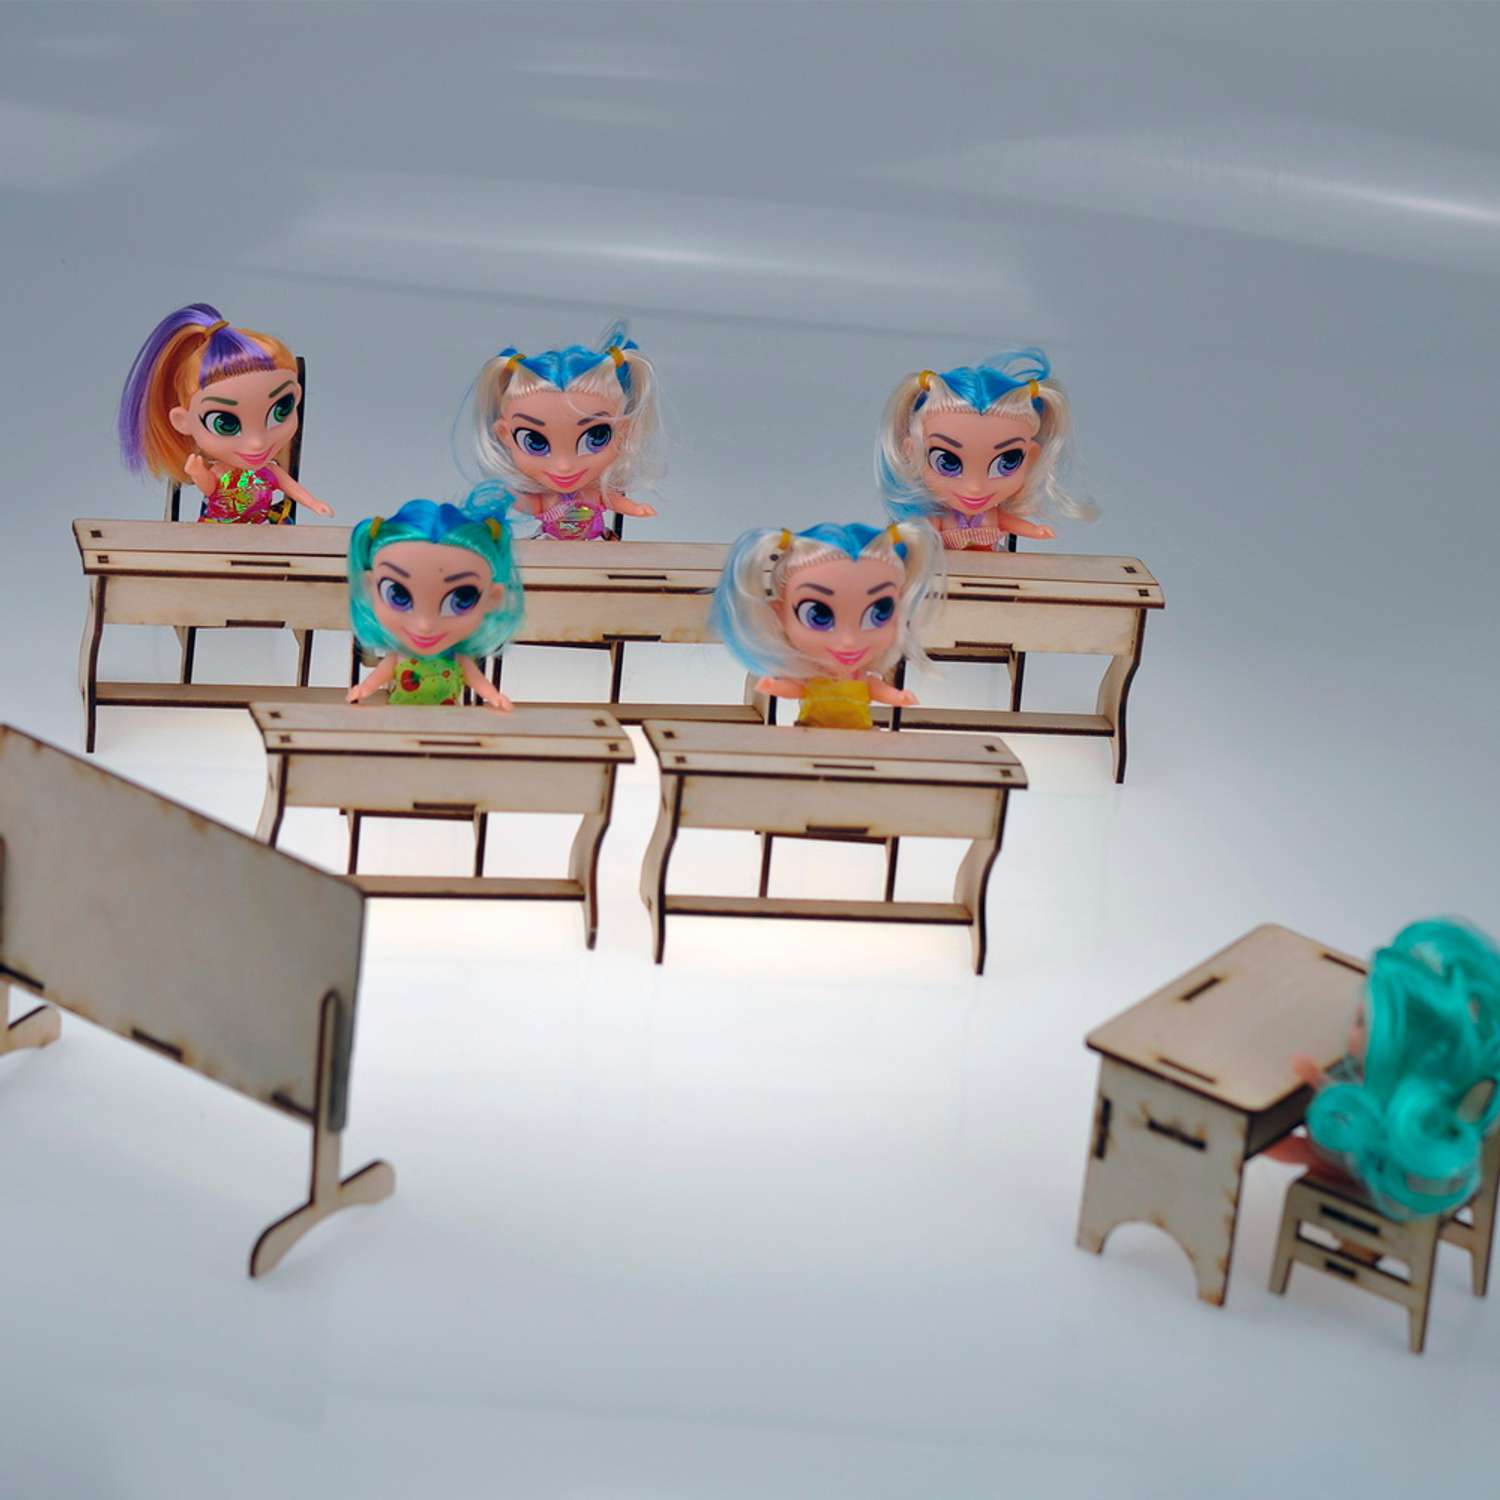 Игровой деревянный класс Amazwood 5 парт- учительский стол - доска - 6 стульев - 6 кукол AW1006 - фото 7